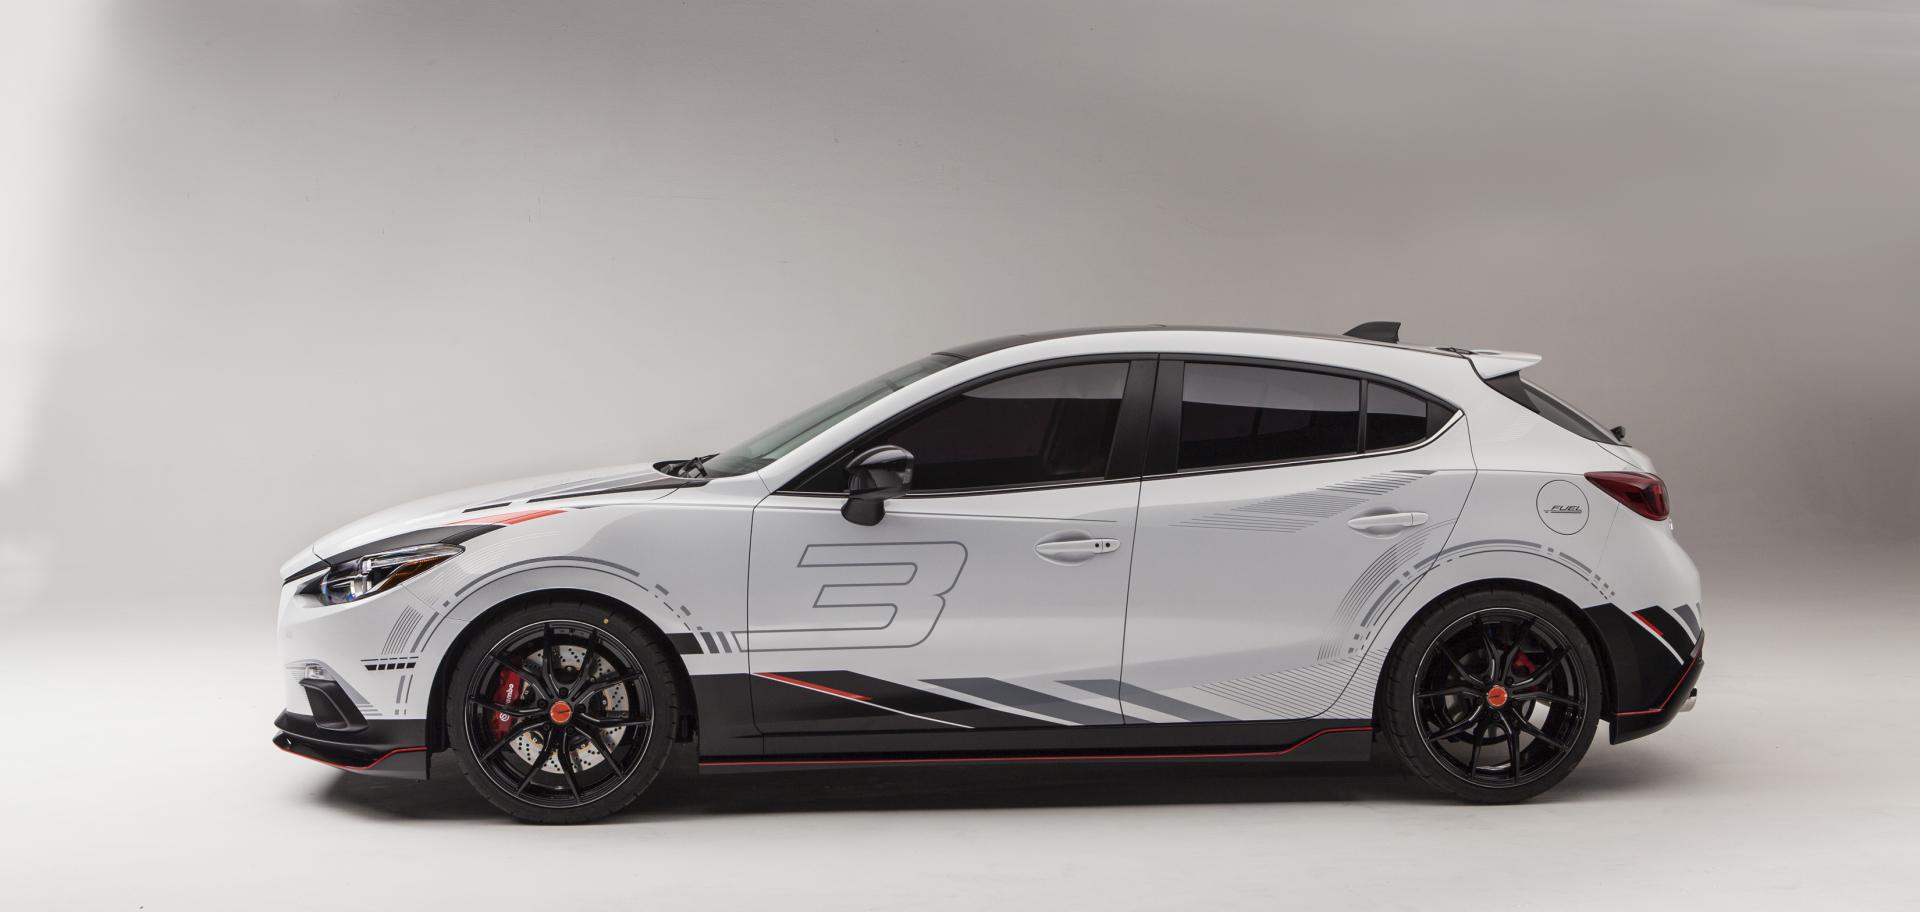 2013 Mazda Club Sport 3 Concept